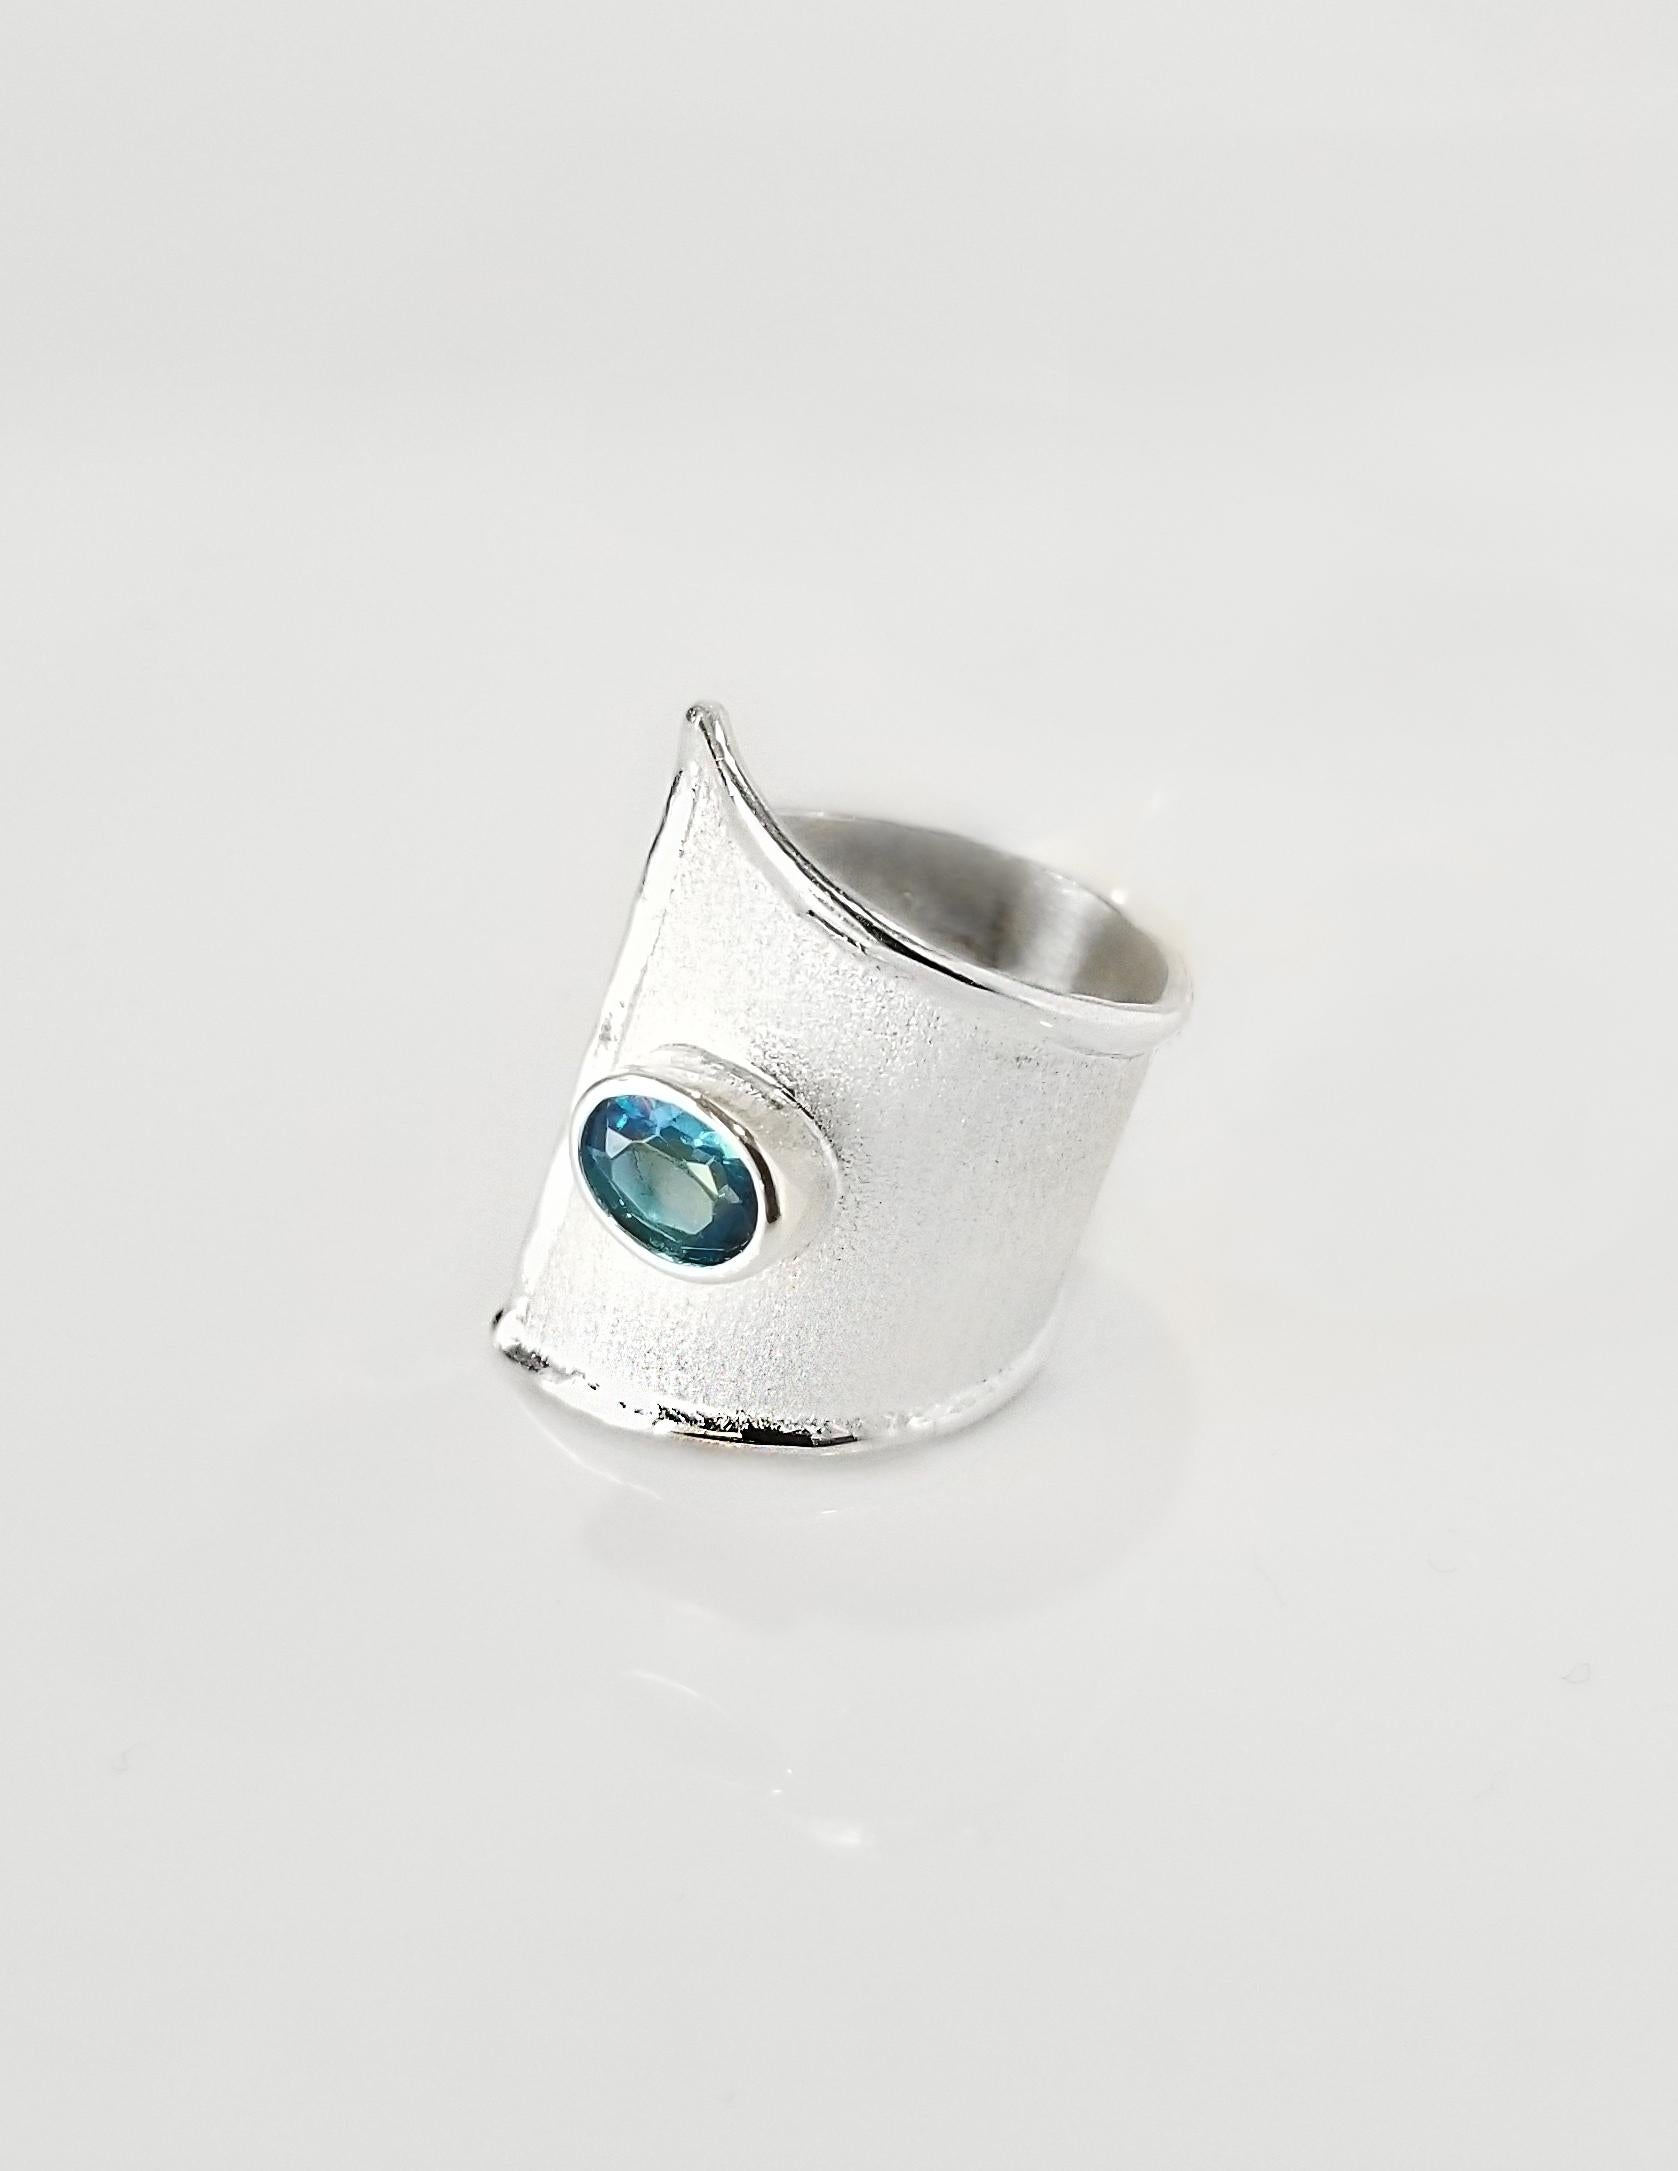 Kunsthandwerklicher Ring Yianni Creations von Ammos Collection, handgefertigt in Griechenland aus Feinsilber 950 Reinheit und mit Palladium beschichtet, um es vor dem Anlaufen zu schützen. Dieser verstellbare Ring ist mit 1,60 Karat Londoner